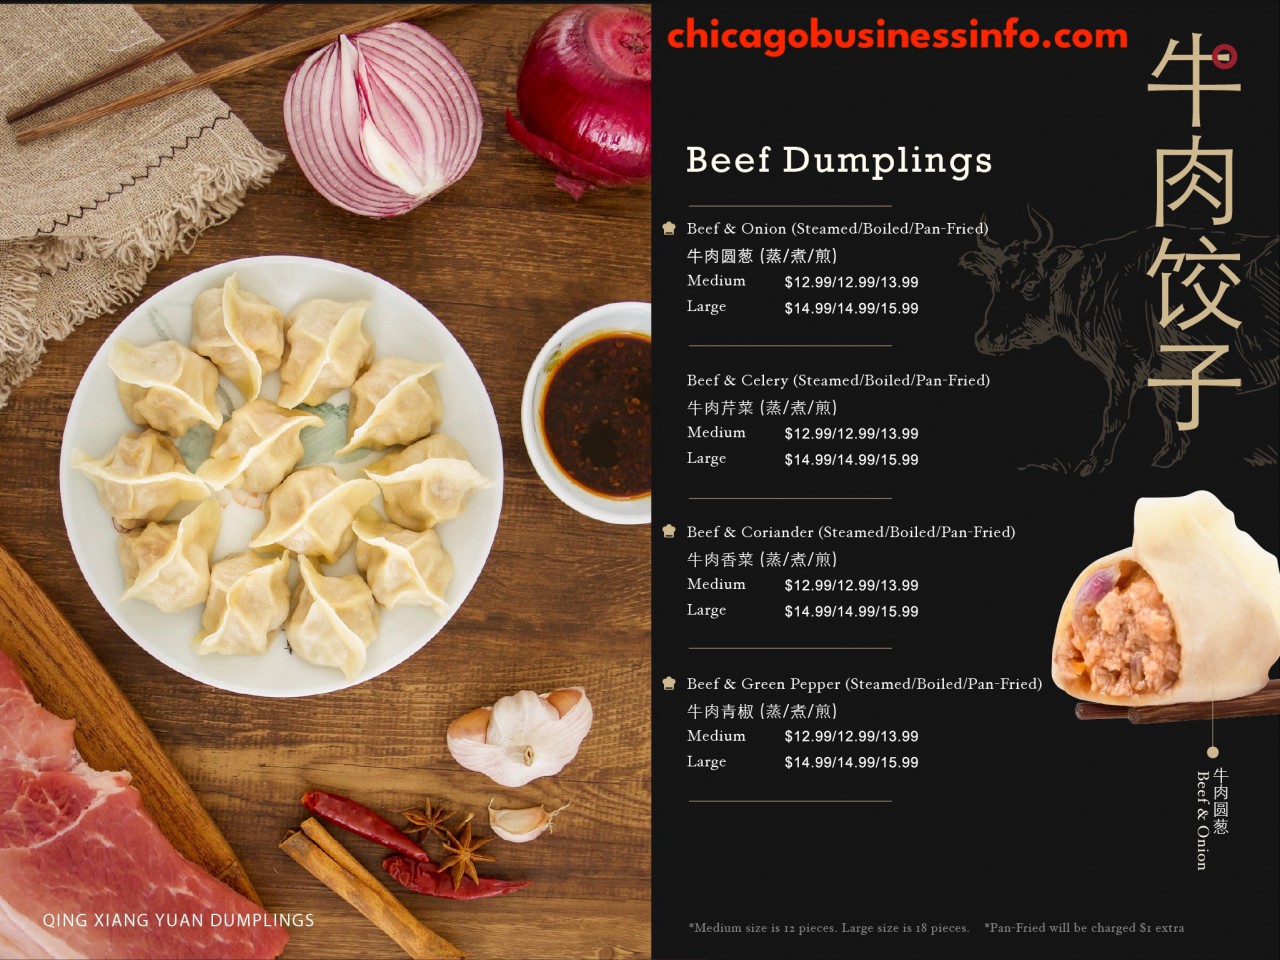 Qing Xiang Yuan Dumplings Chicago Menu 3